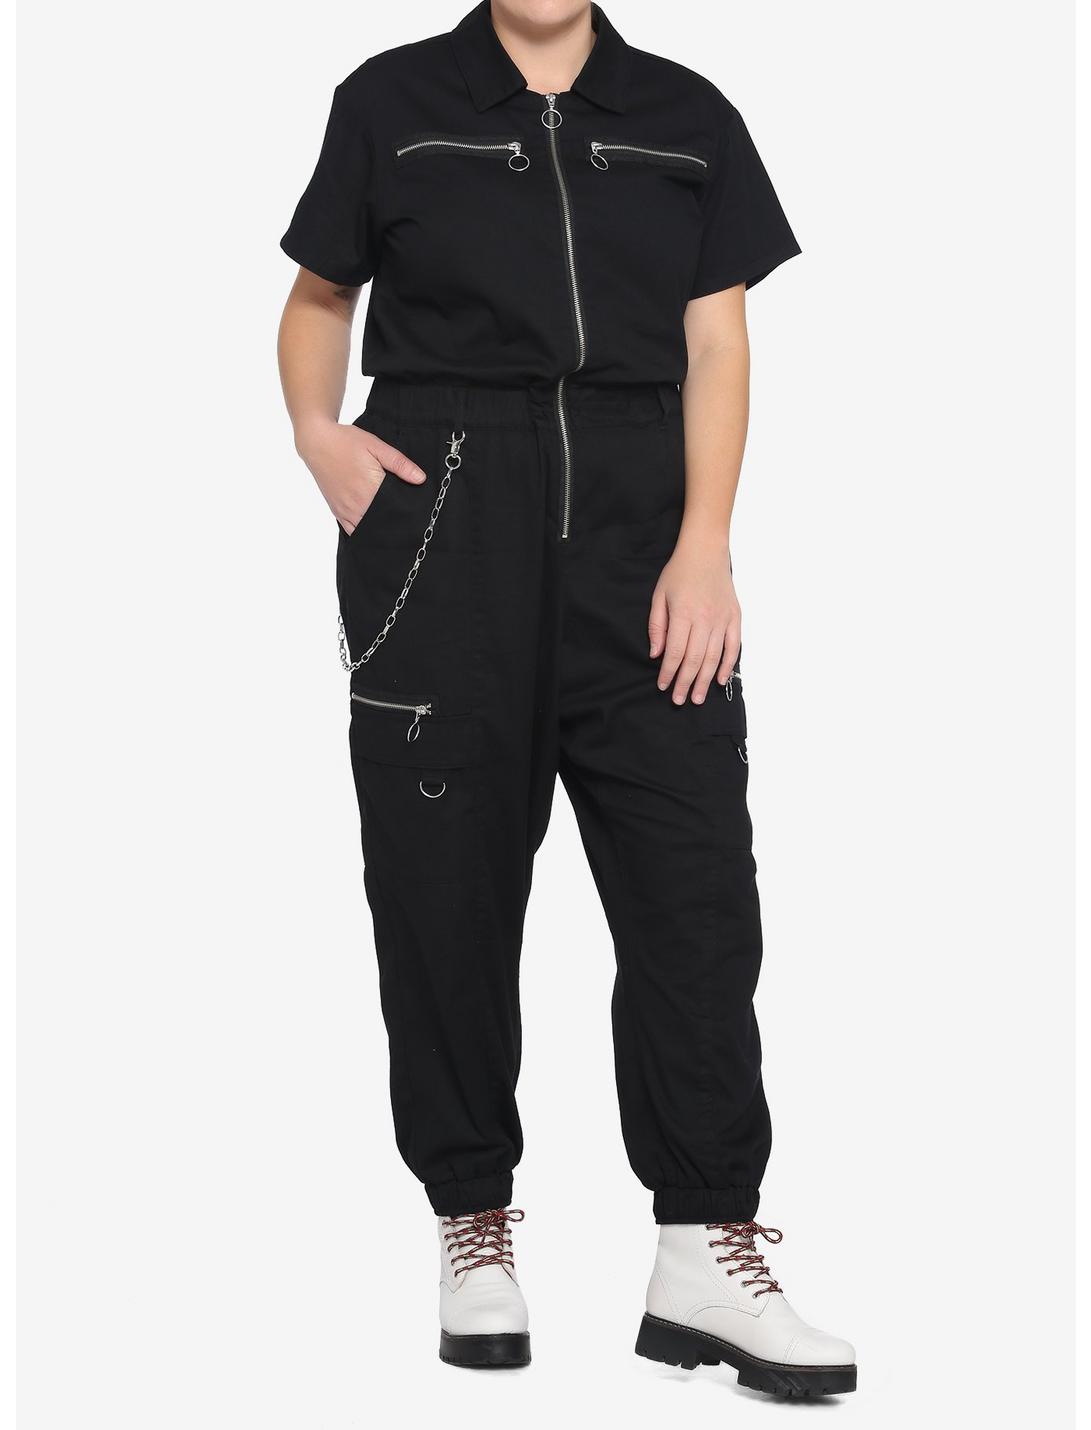 Black Chain Jumpsuit Plus Size, BLACK, hi-res